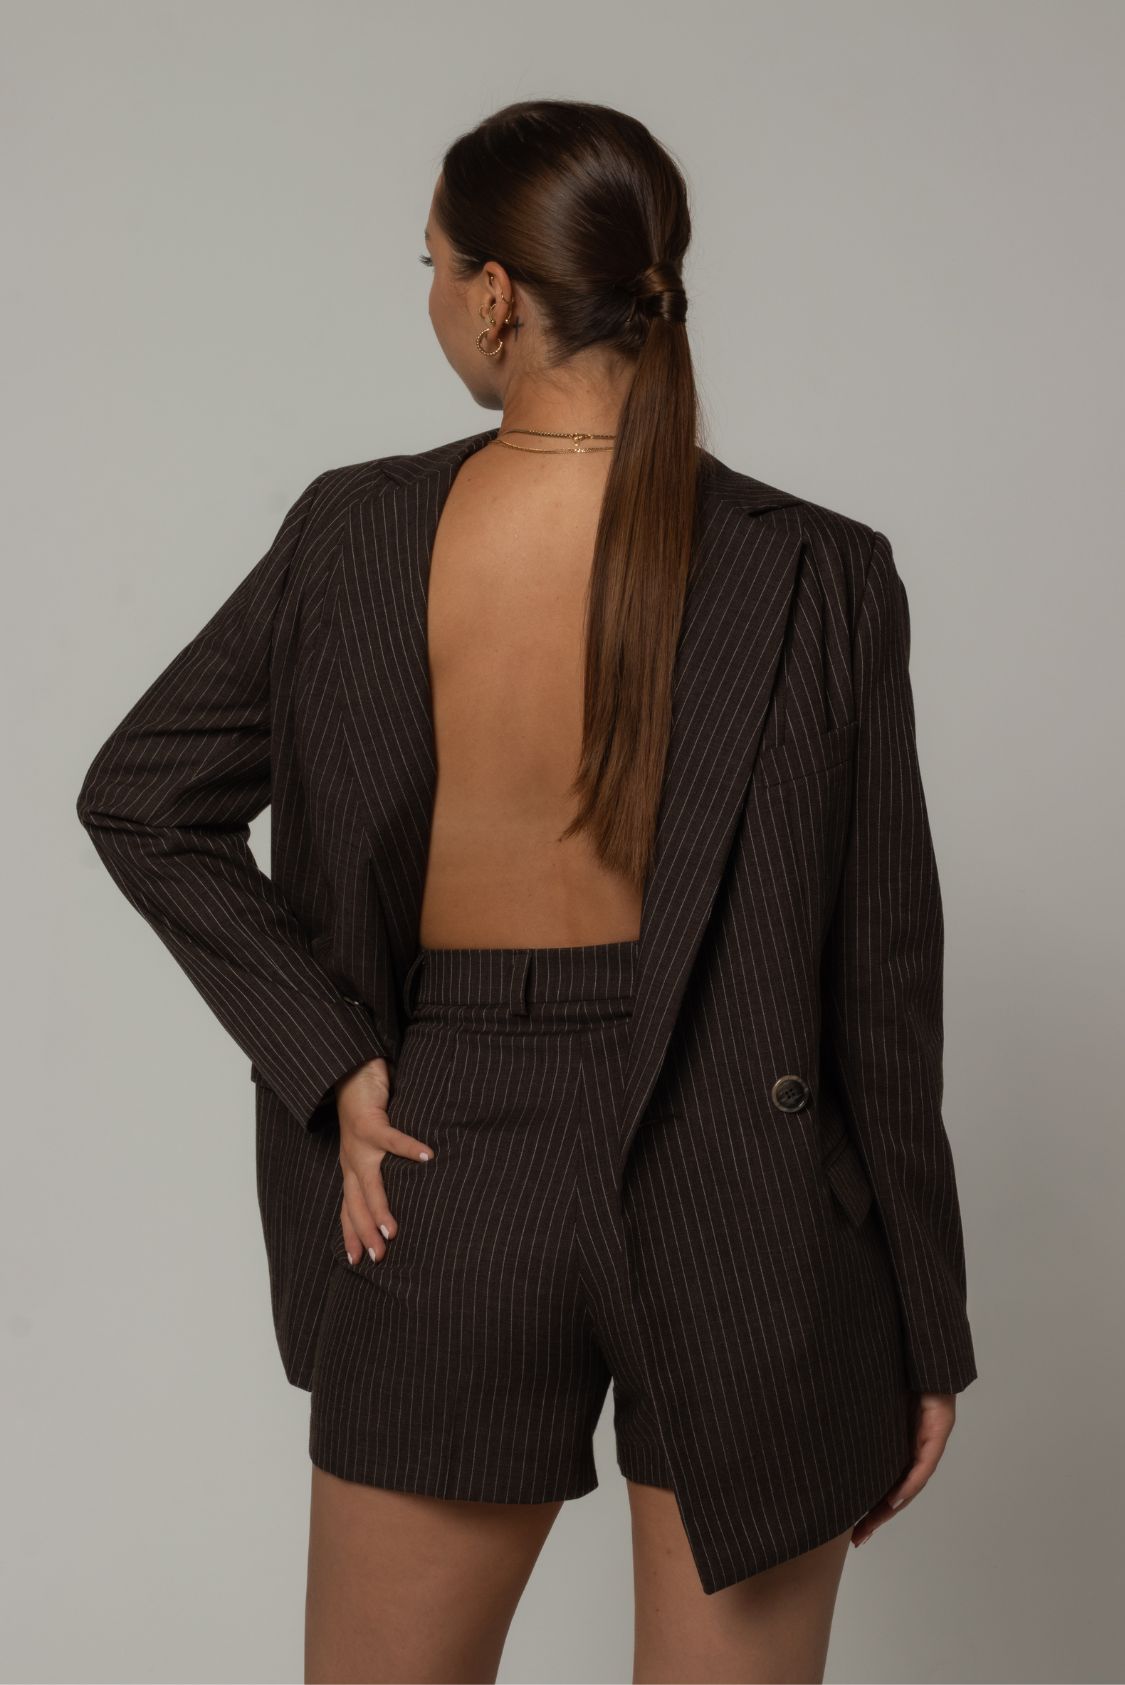 Spodnie garniturowe krótkie damskie wełniane brązowe